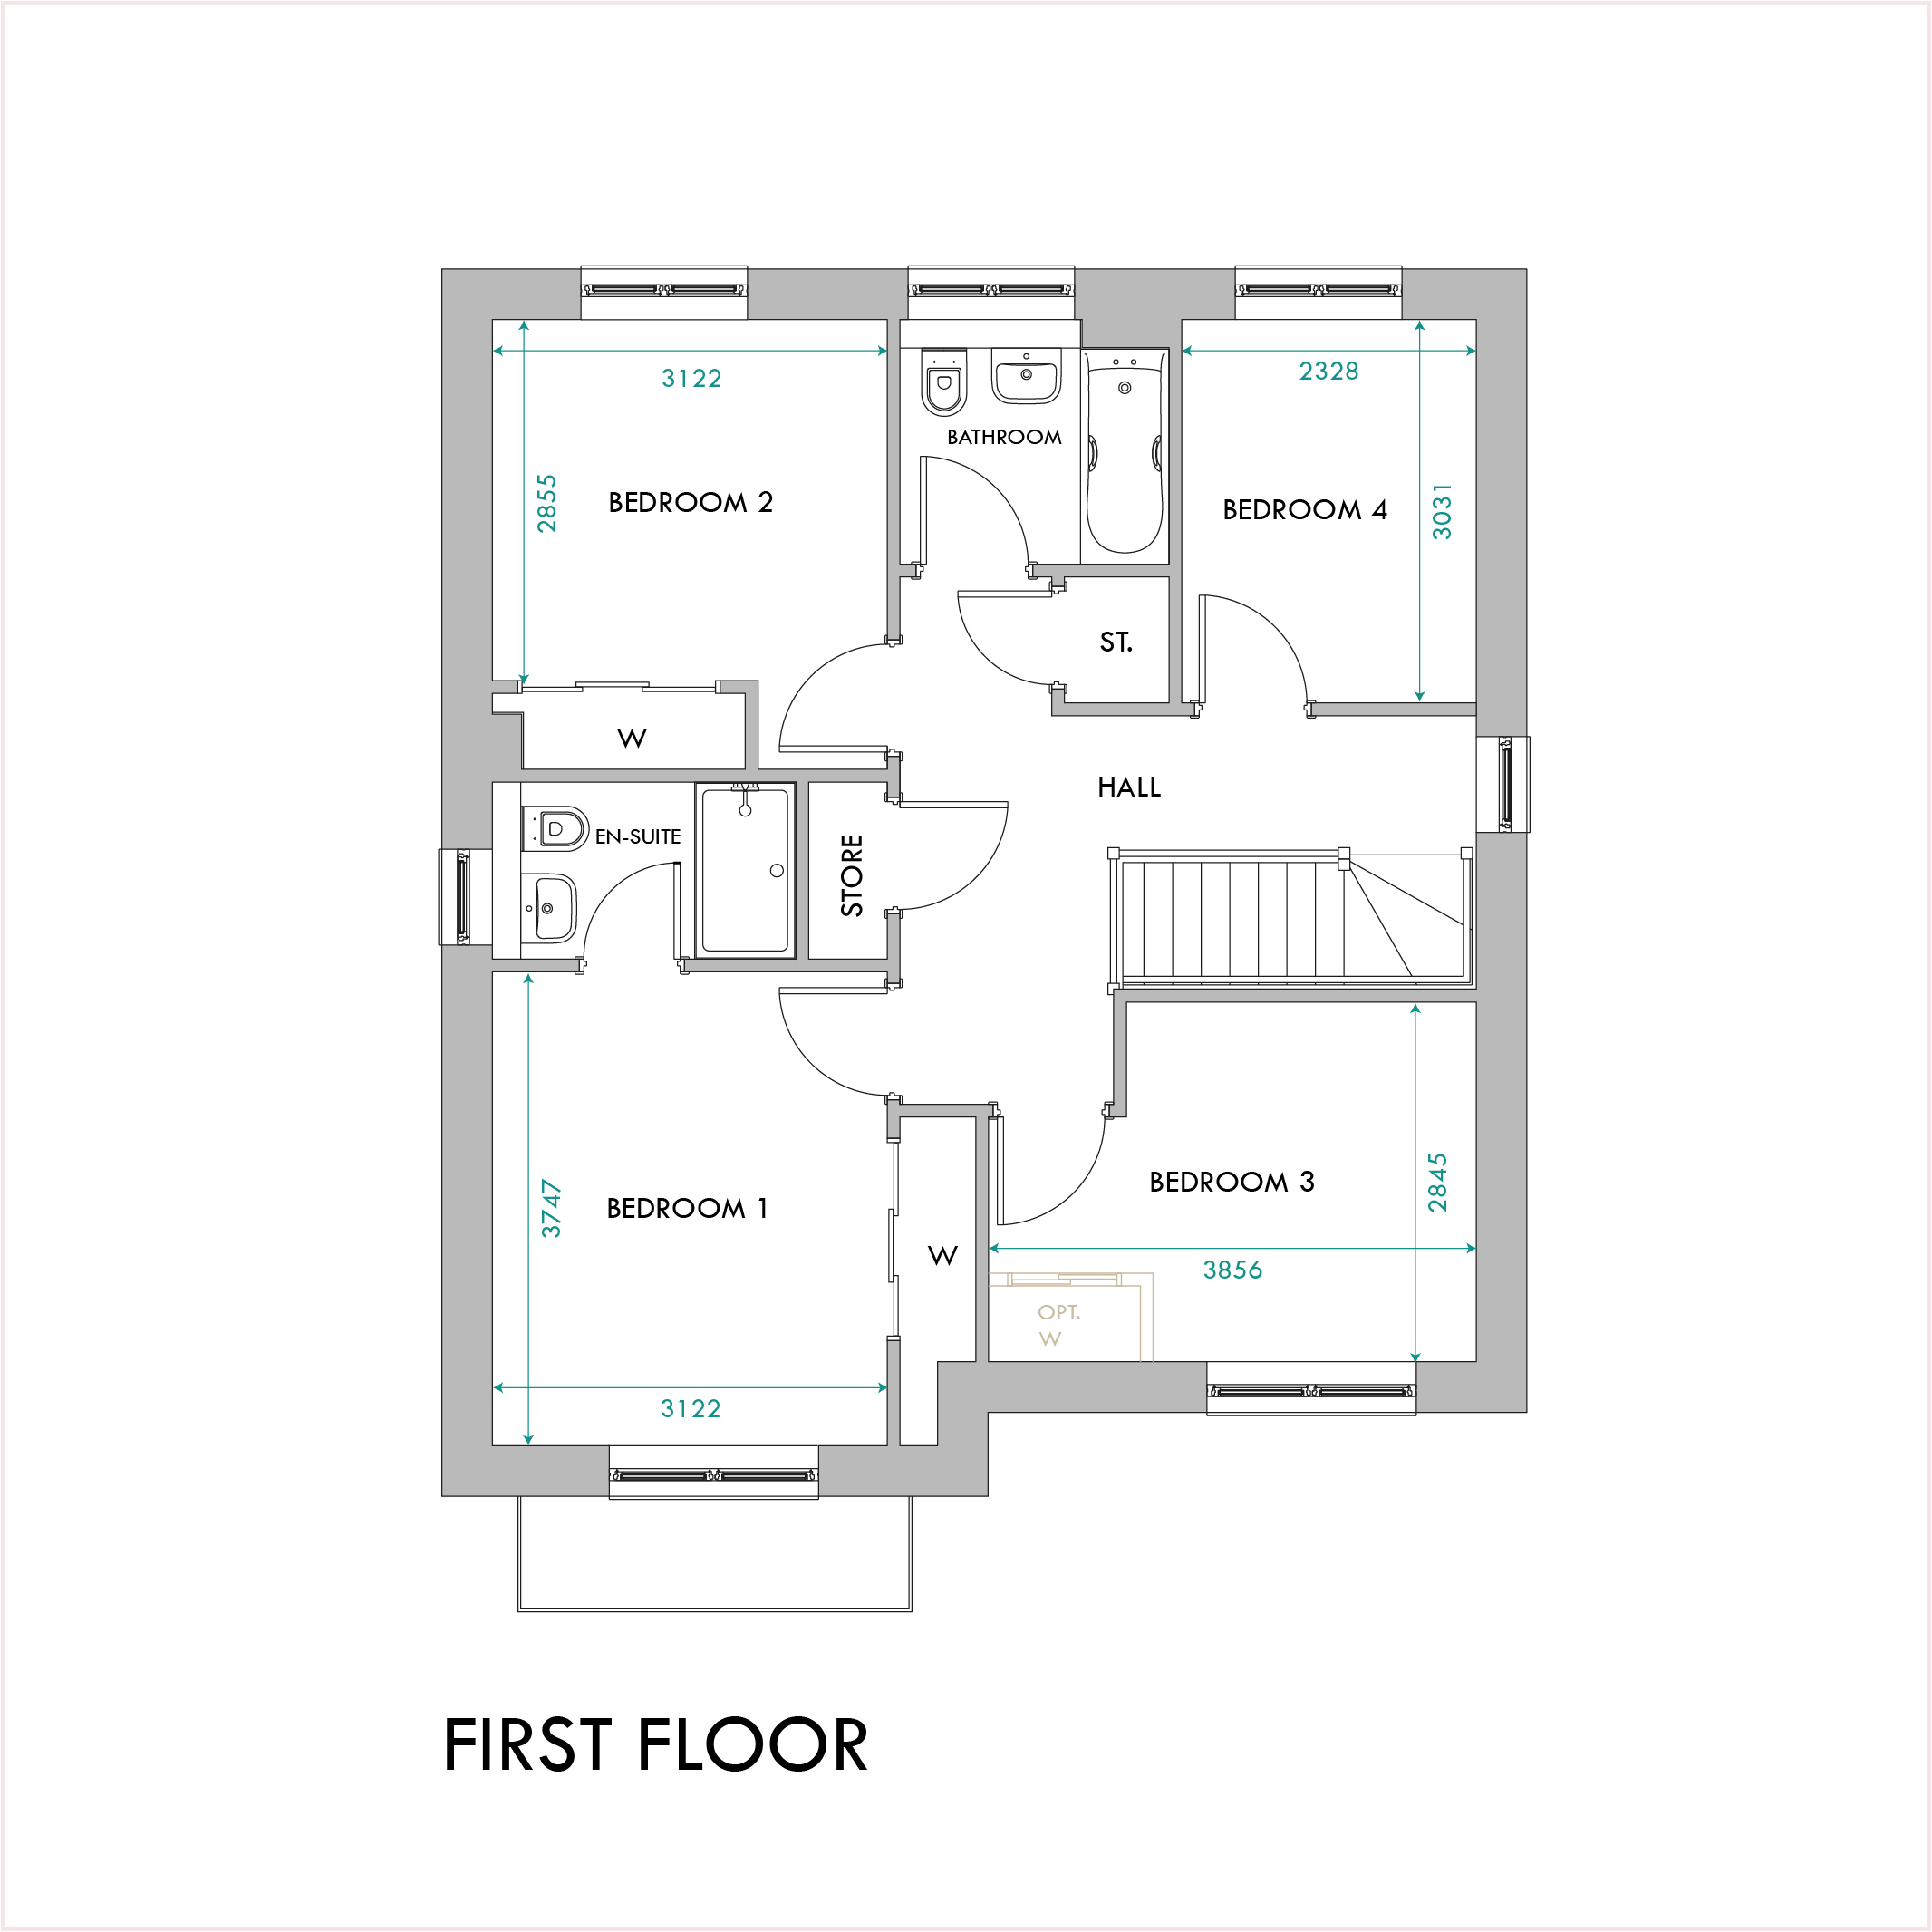 Redwood first floor plan